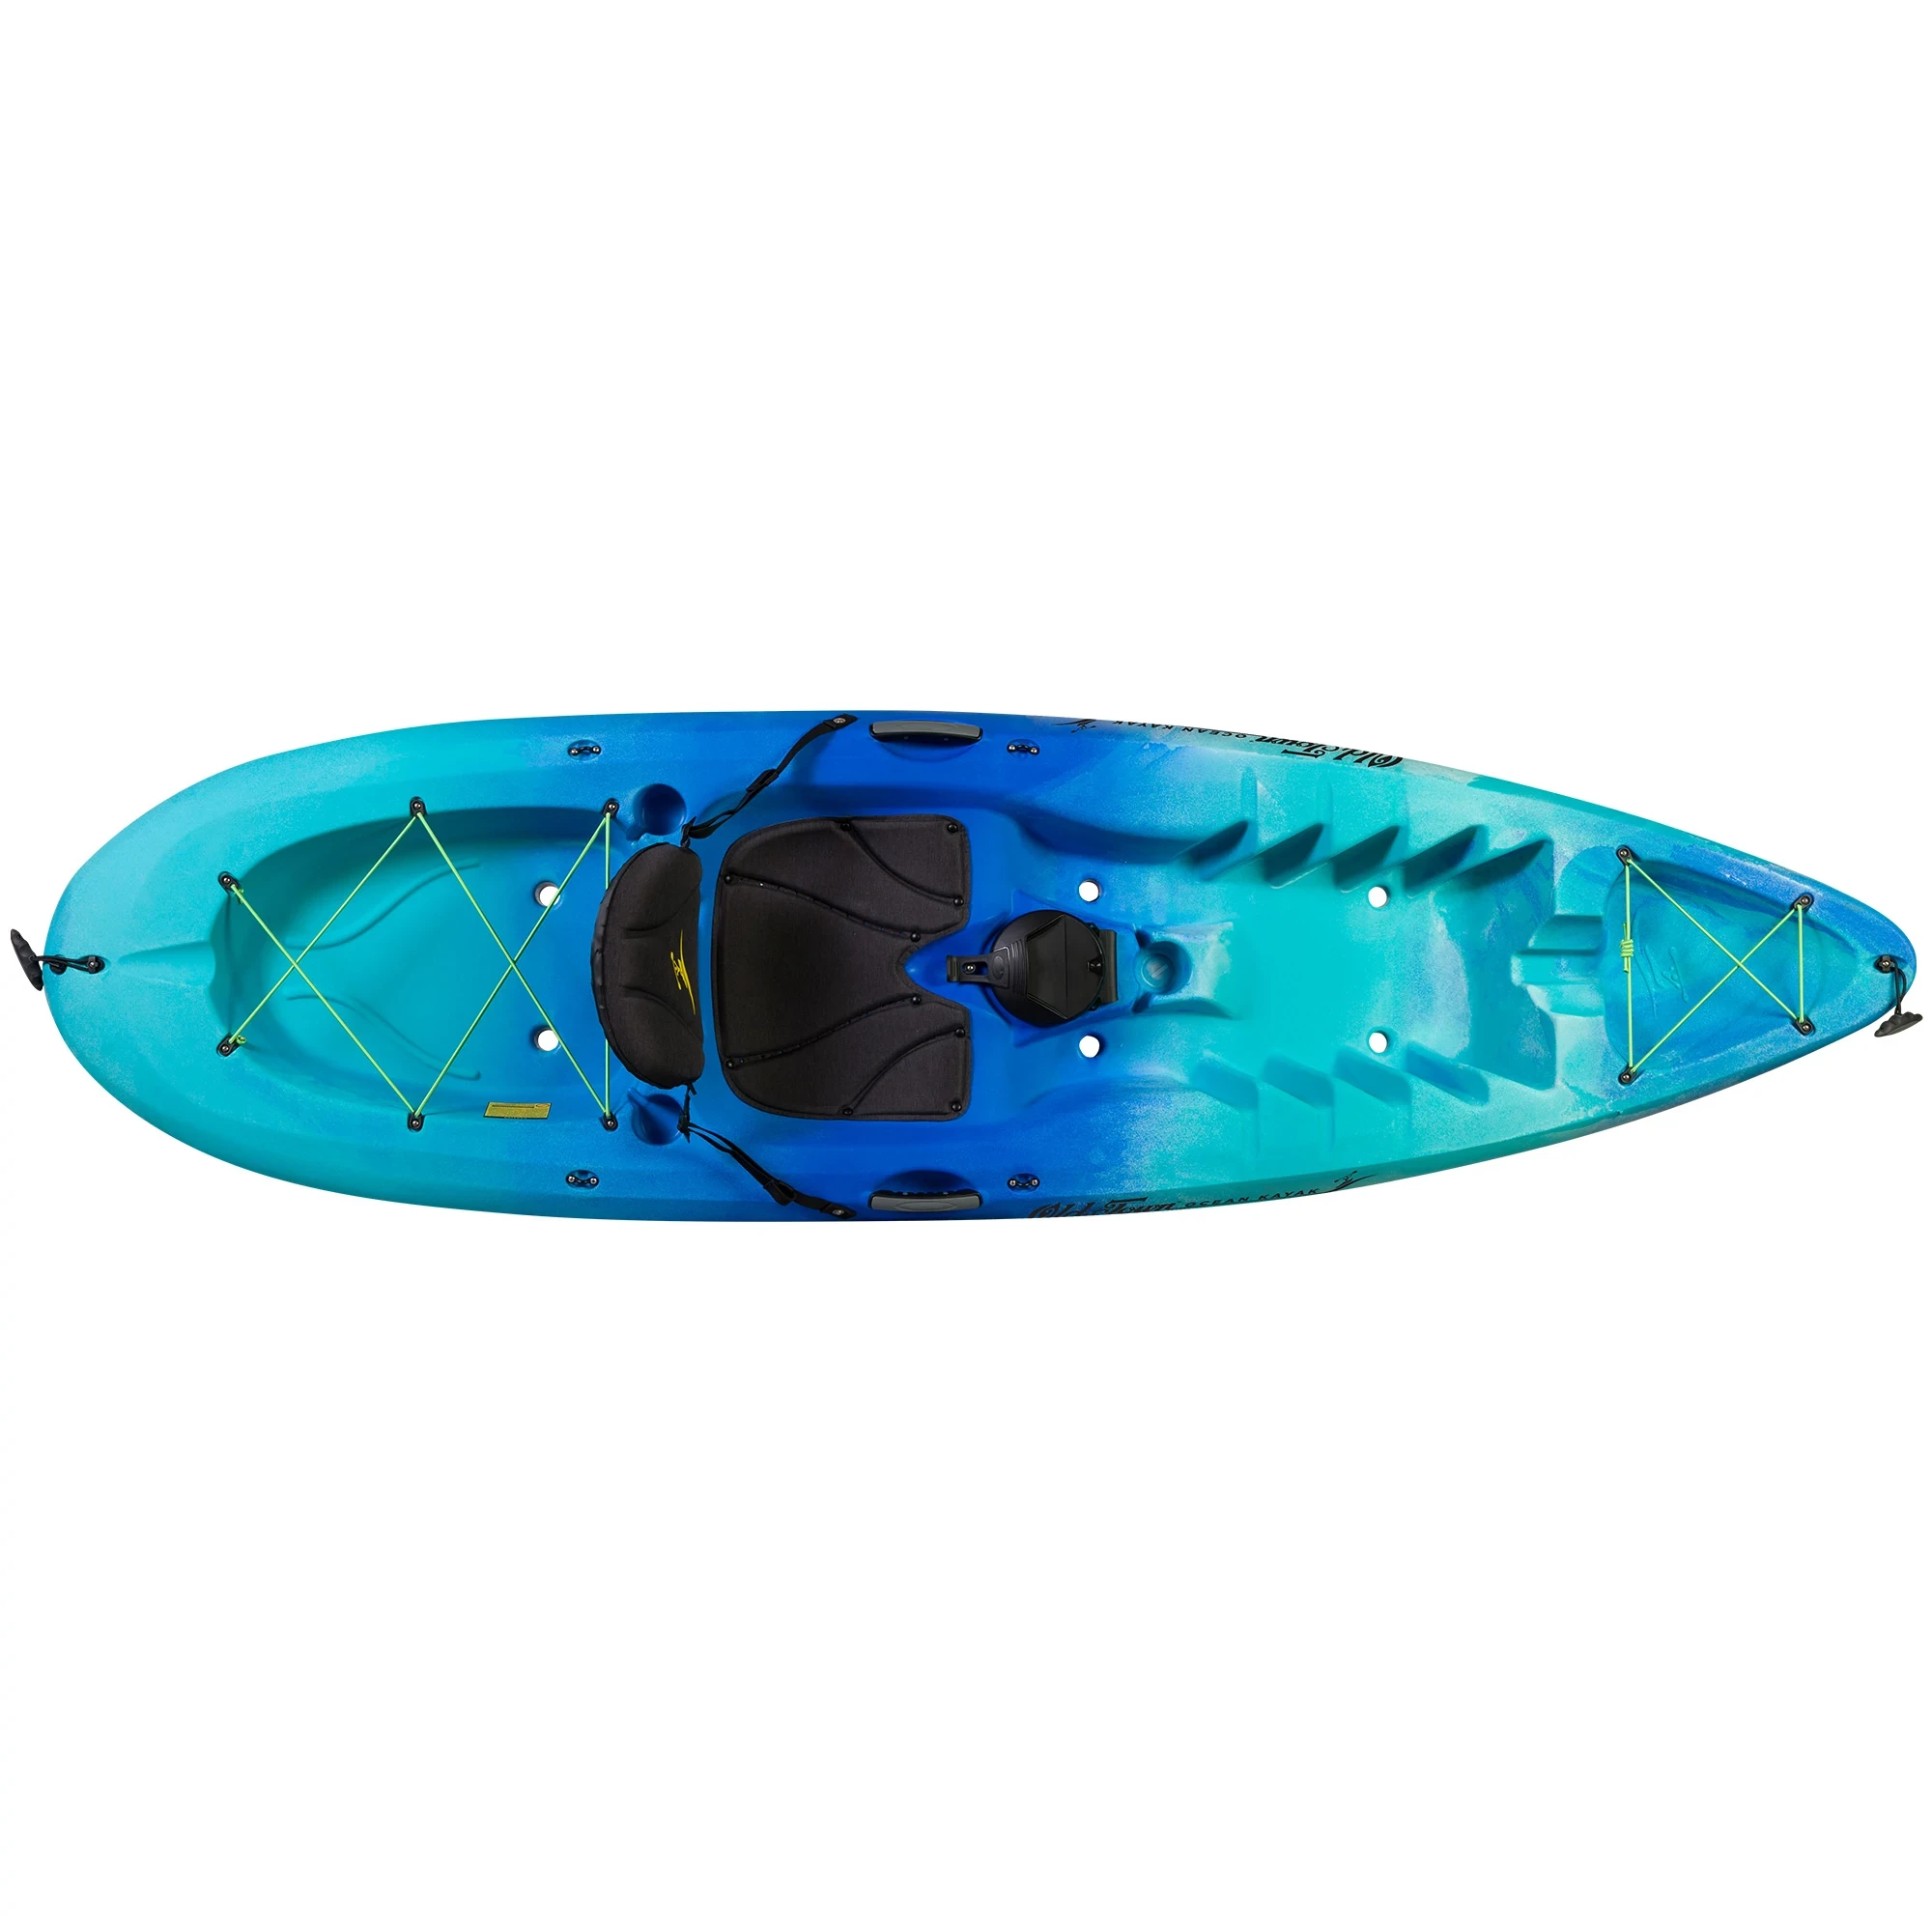 Ocean Kayak Malibu 9.5 - Seaglass - Top View